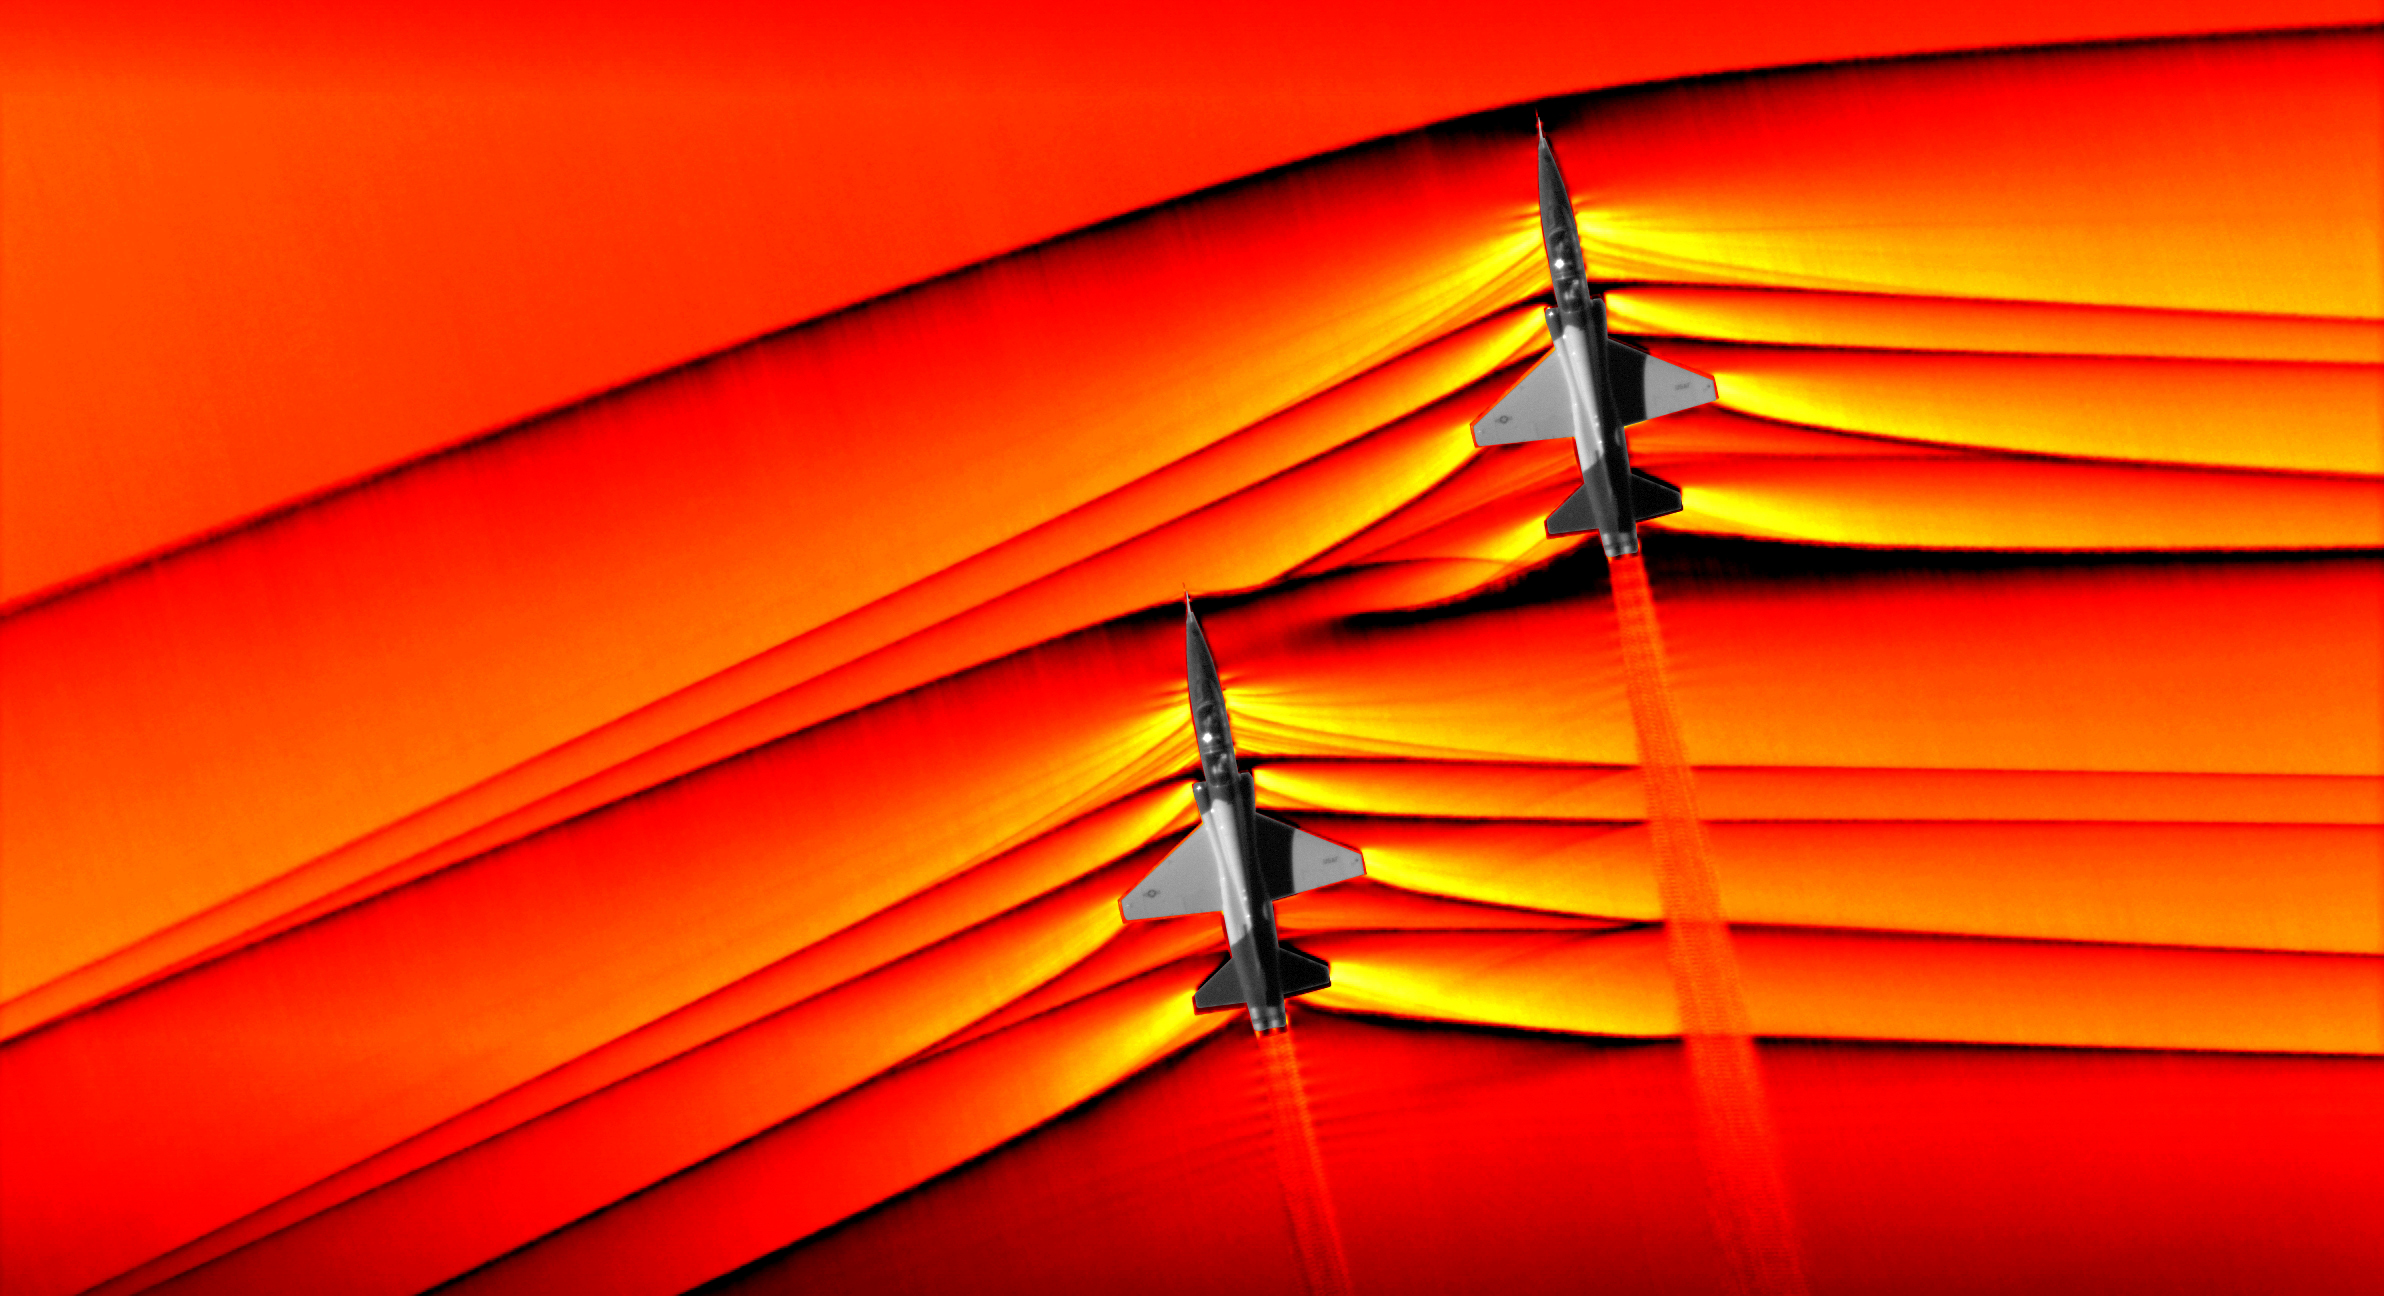 NASA captured images of mingling shock waves